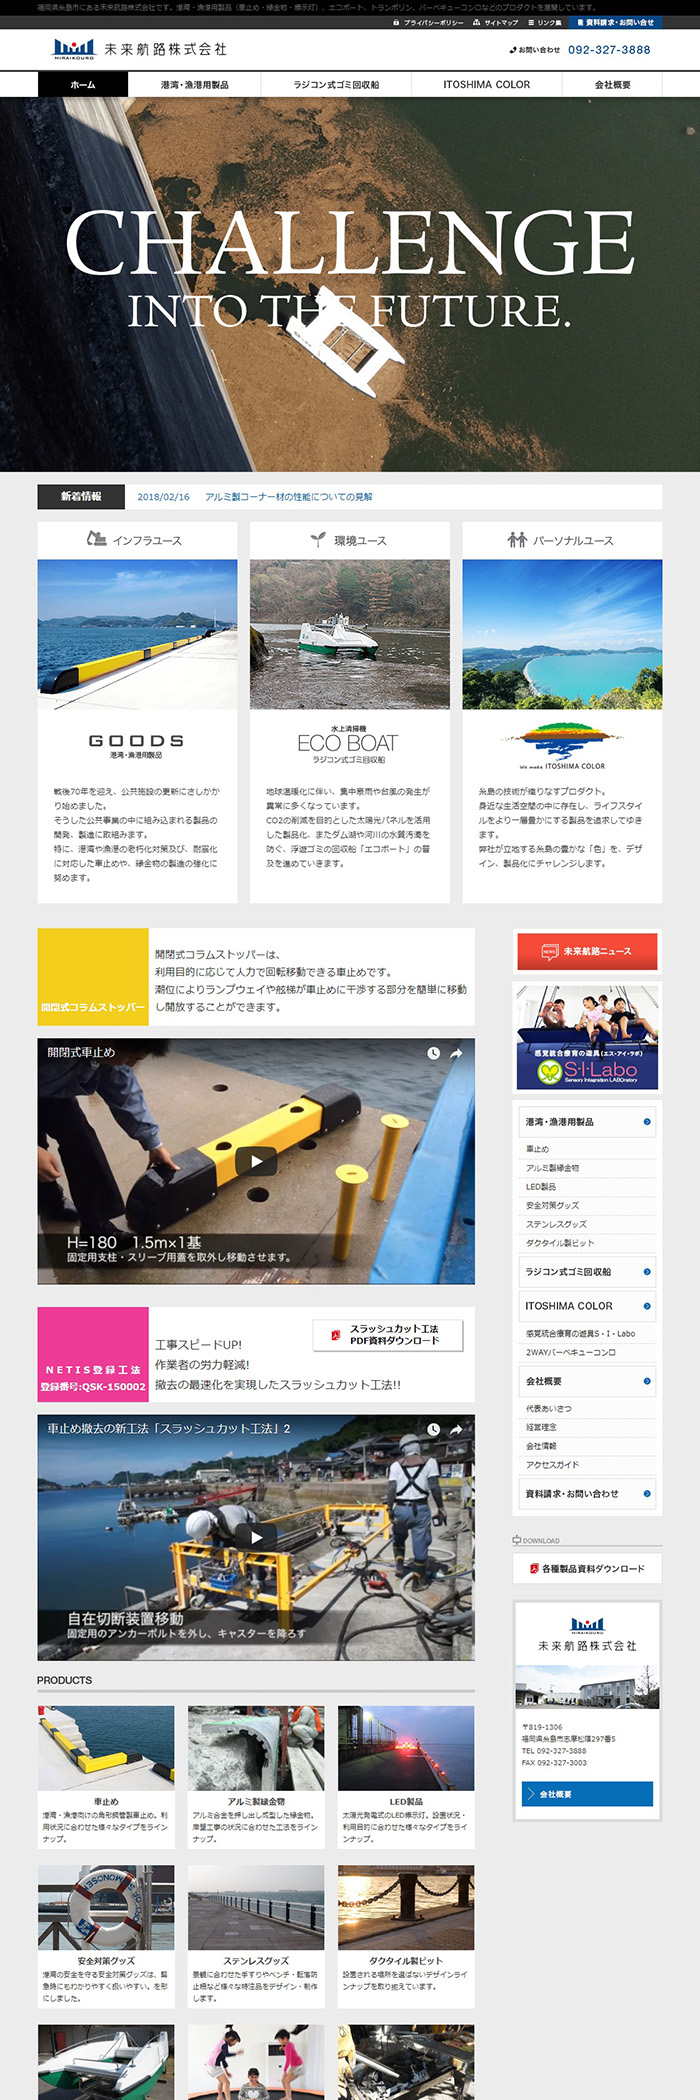 未来航路株式会社様ホームページ制作実績 デスクトップイメージ